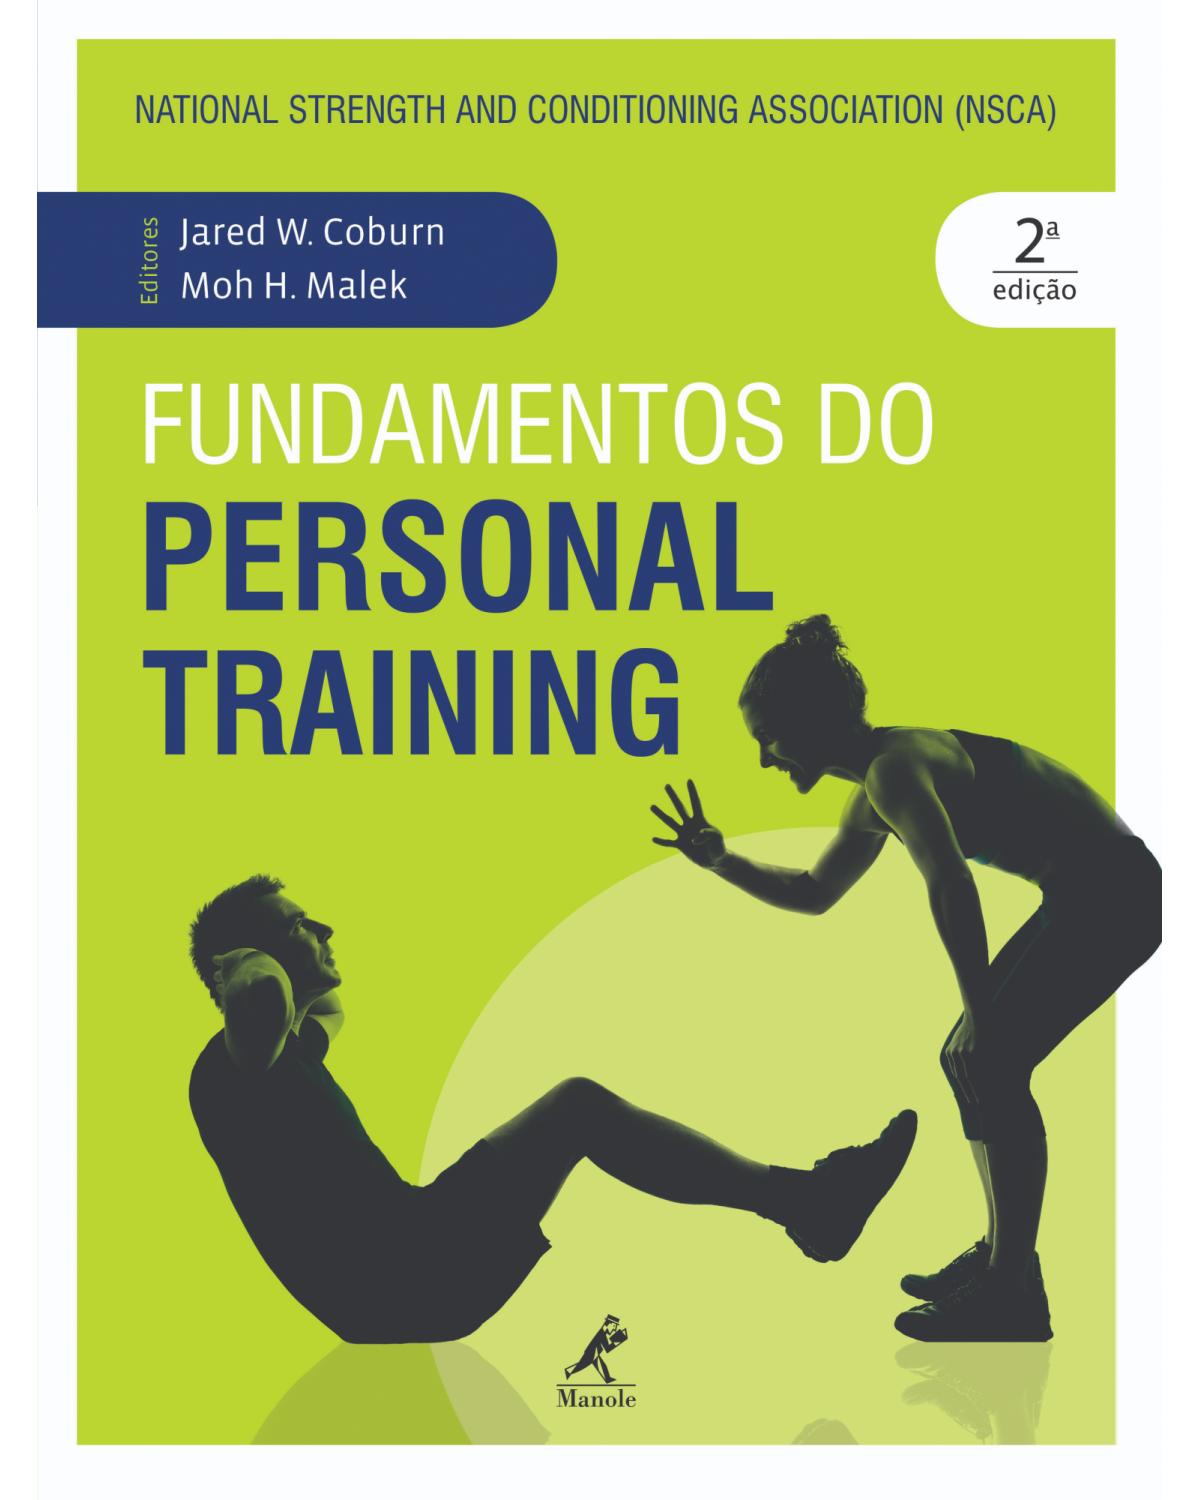 Fundamentos do personal training - National Strength and Conditioning Association (NSCA) - 2ª Edição | 2019